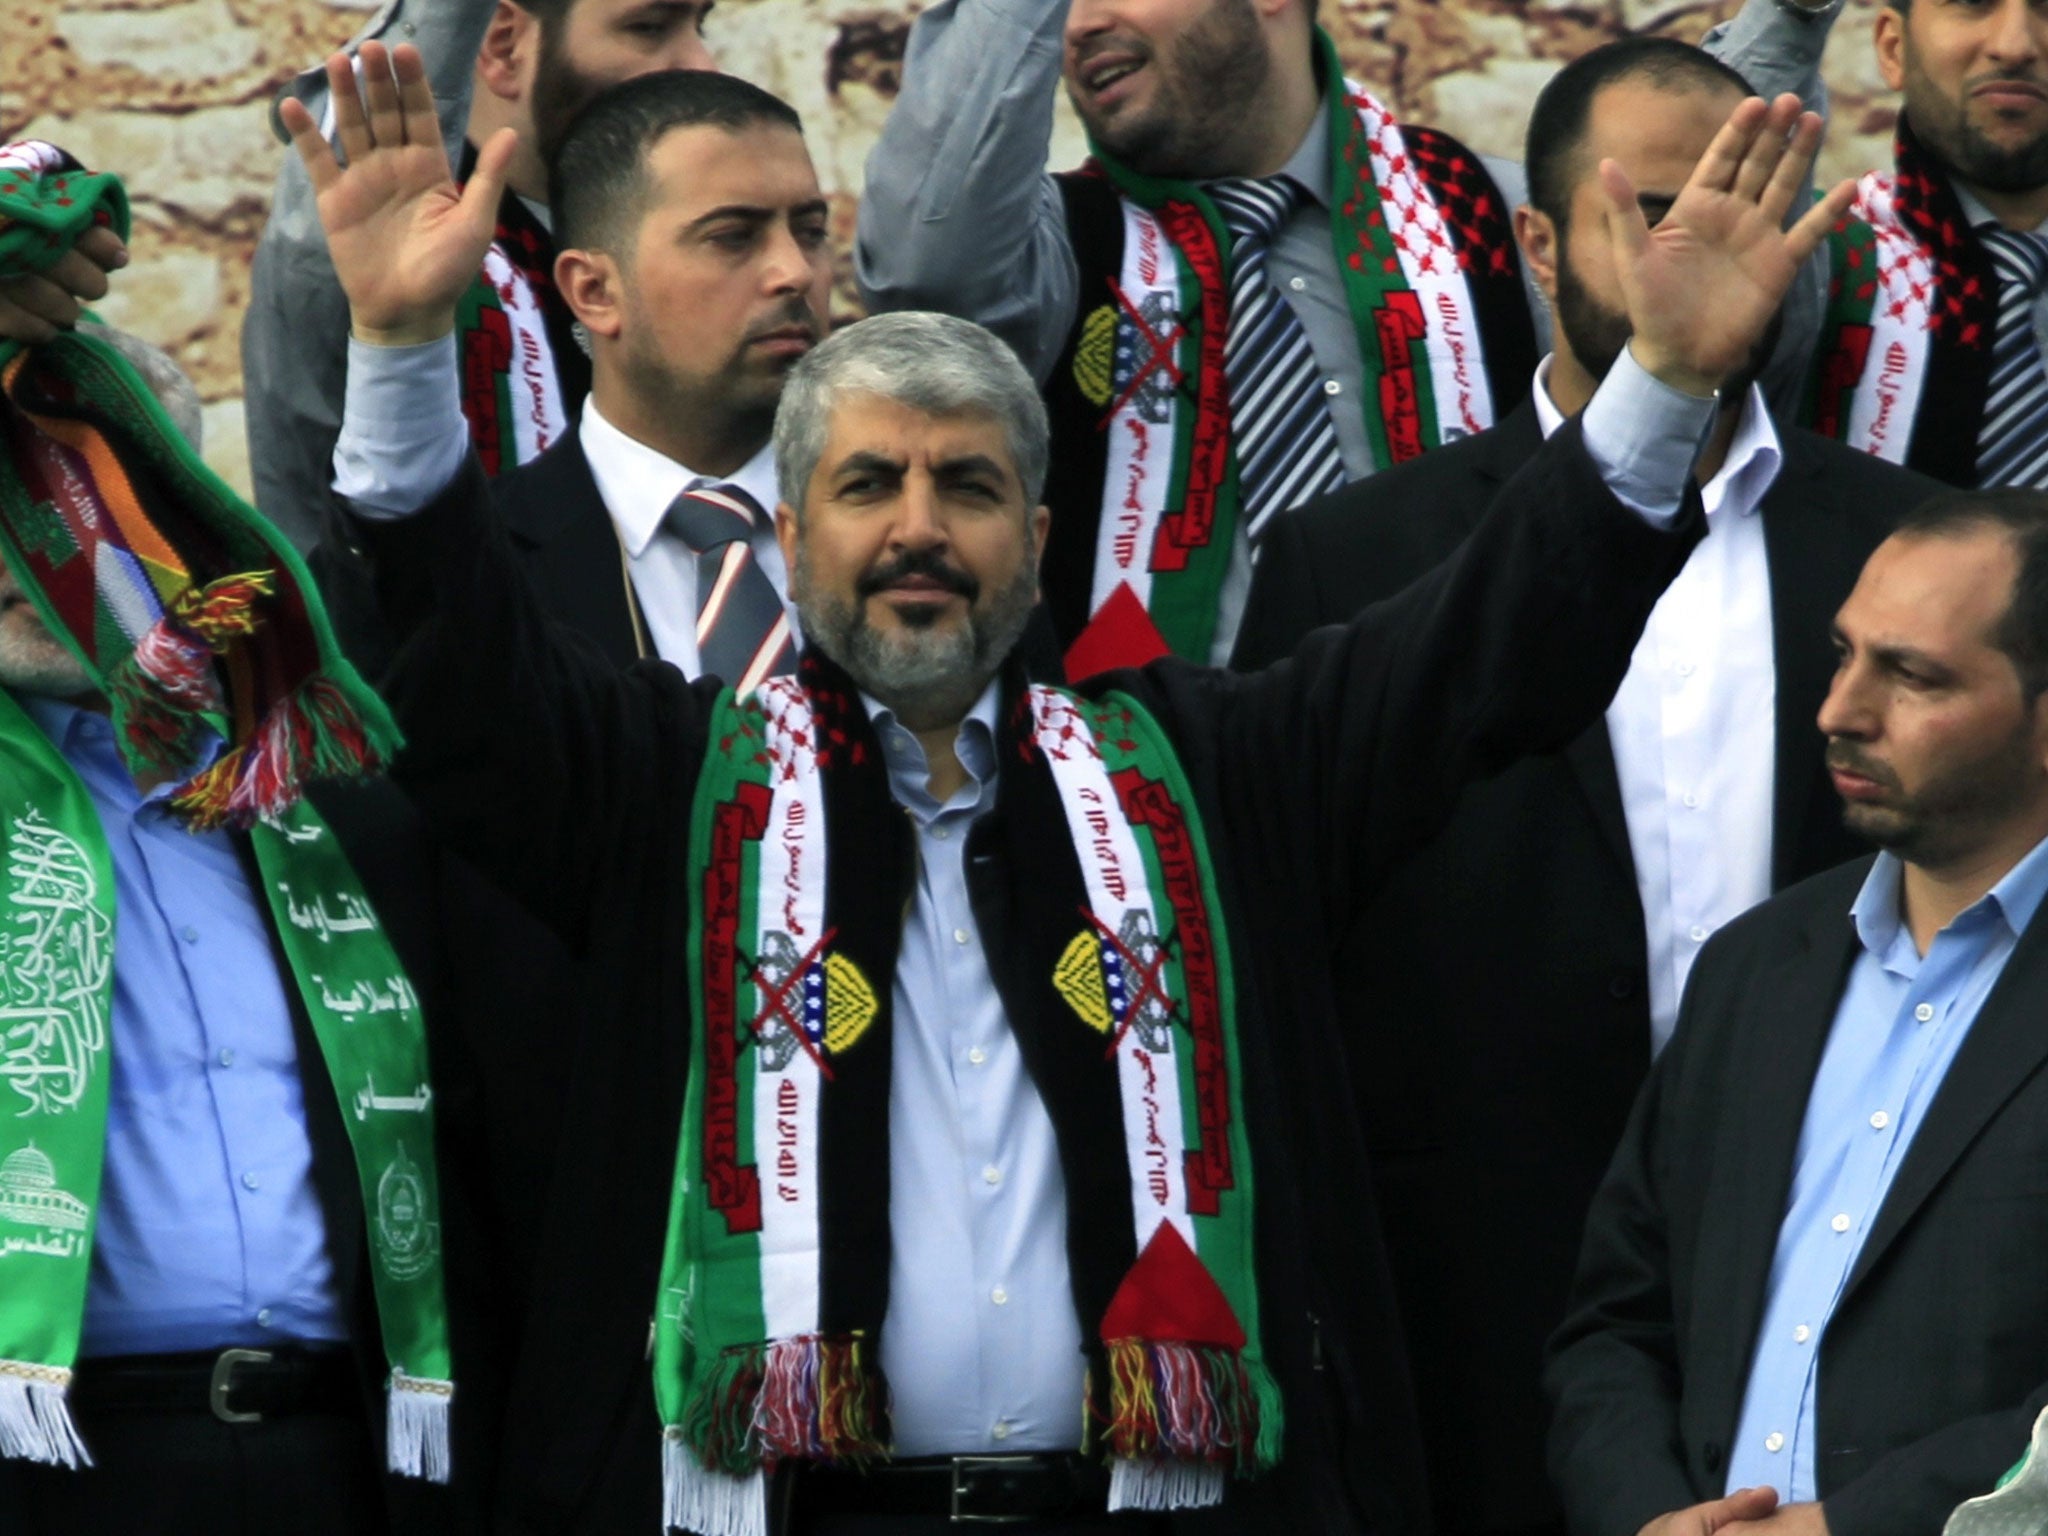 Khaled Meshaa, leader of the Islamic militant group Hamas